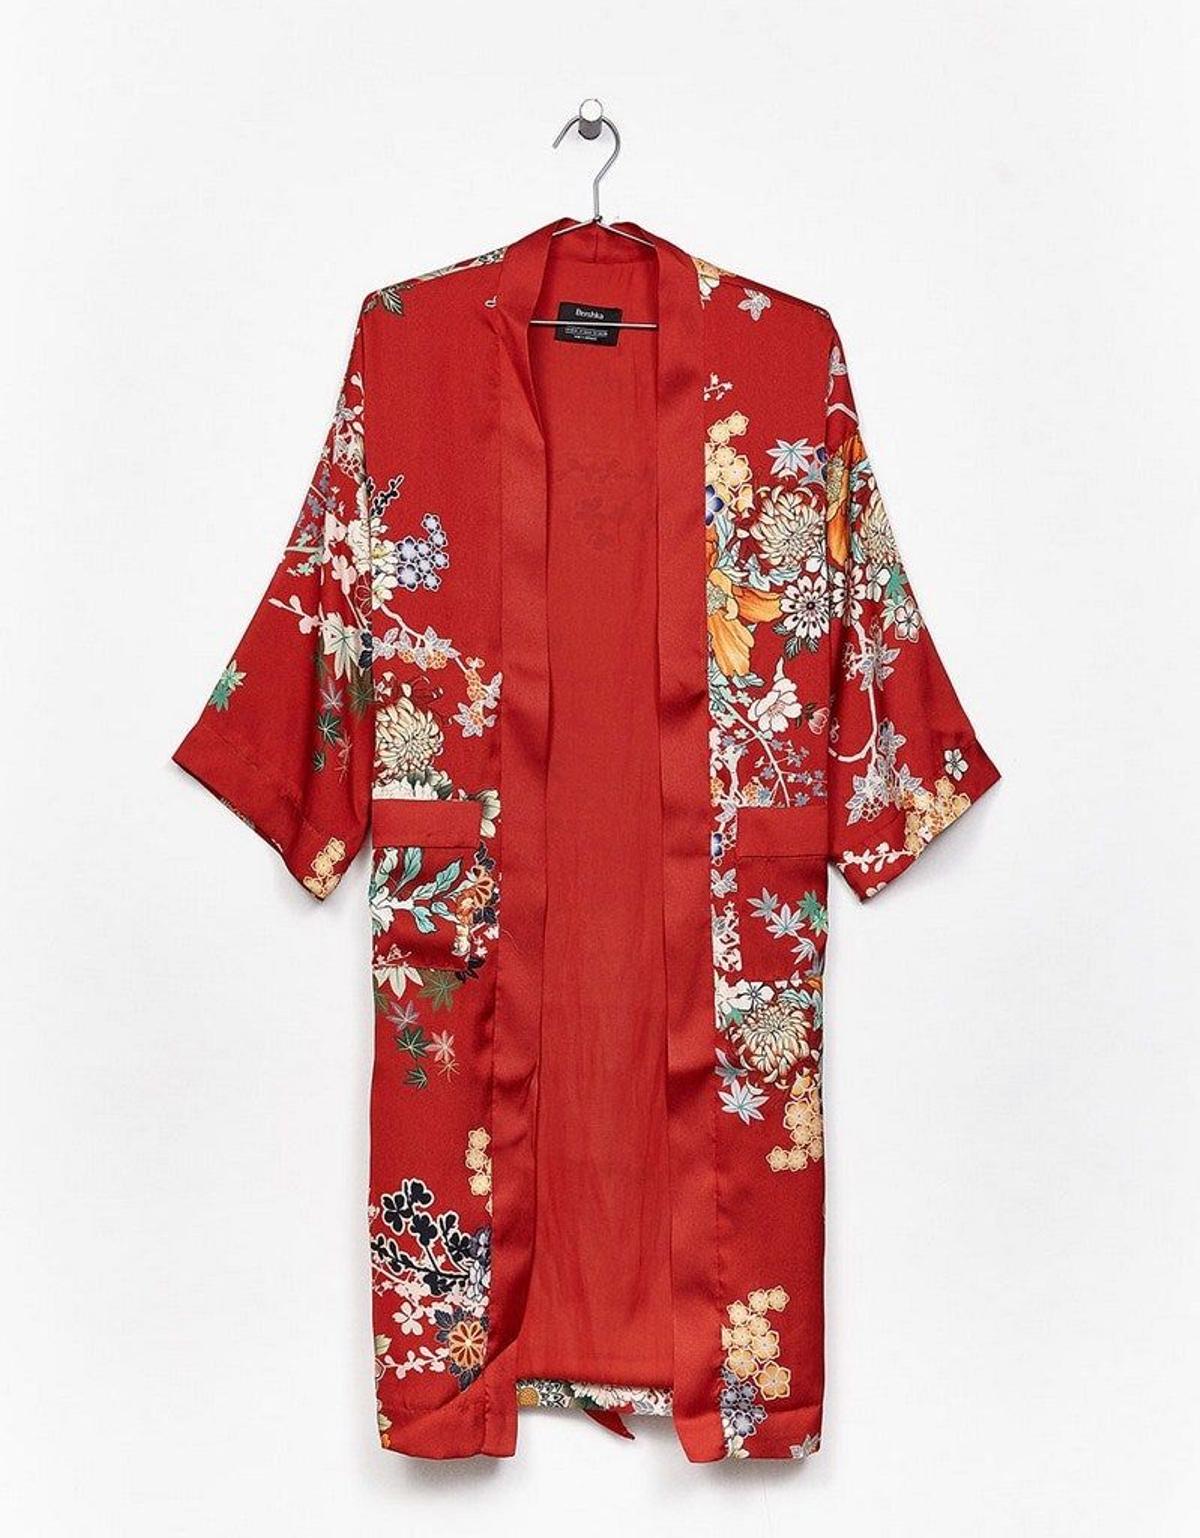 Trend alert: vuelven los kimonos